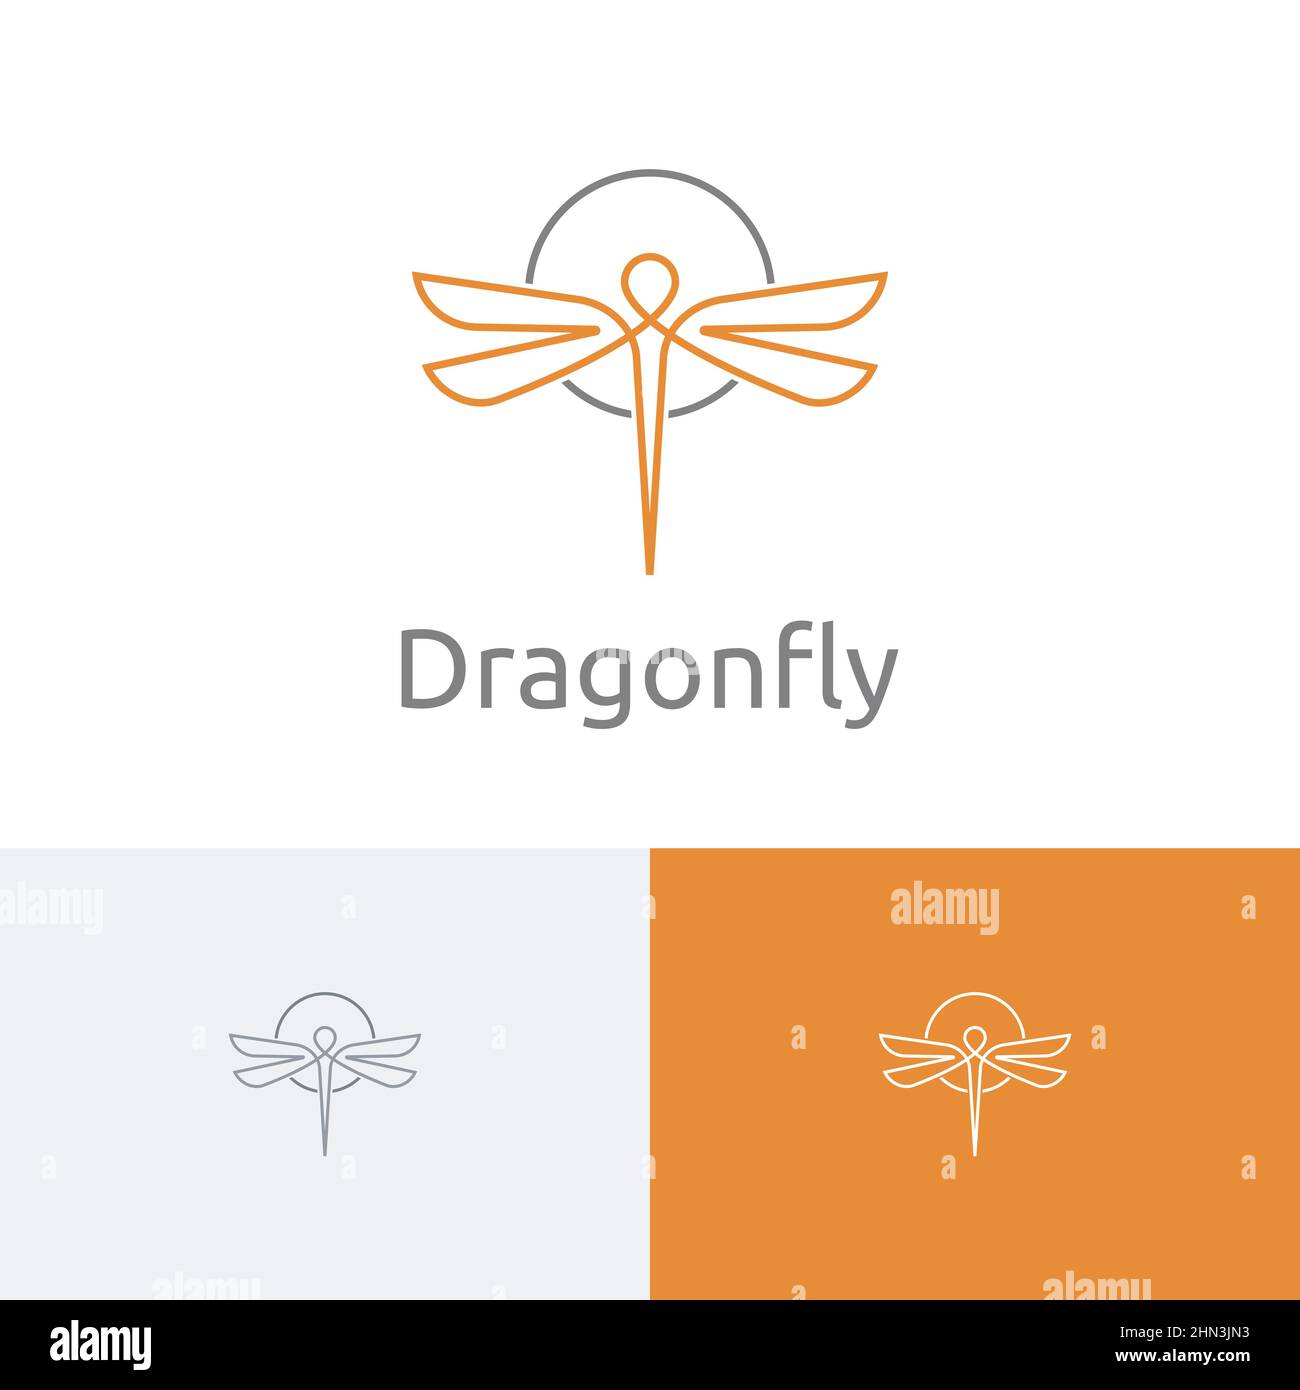 Elegante cerchio Dragonfly Insect Wings Fly linea natura Logo idea Illustrazione Vettoriale